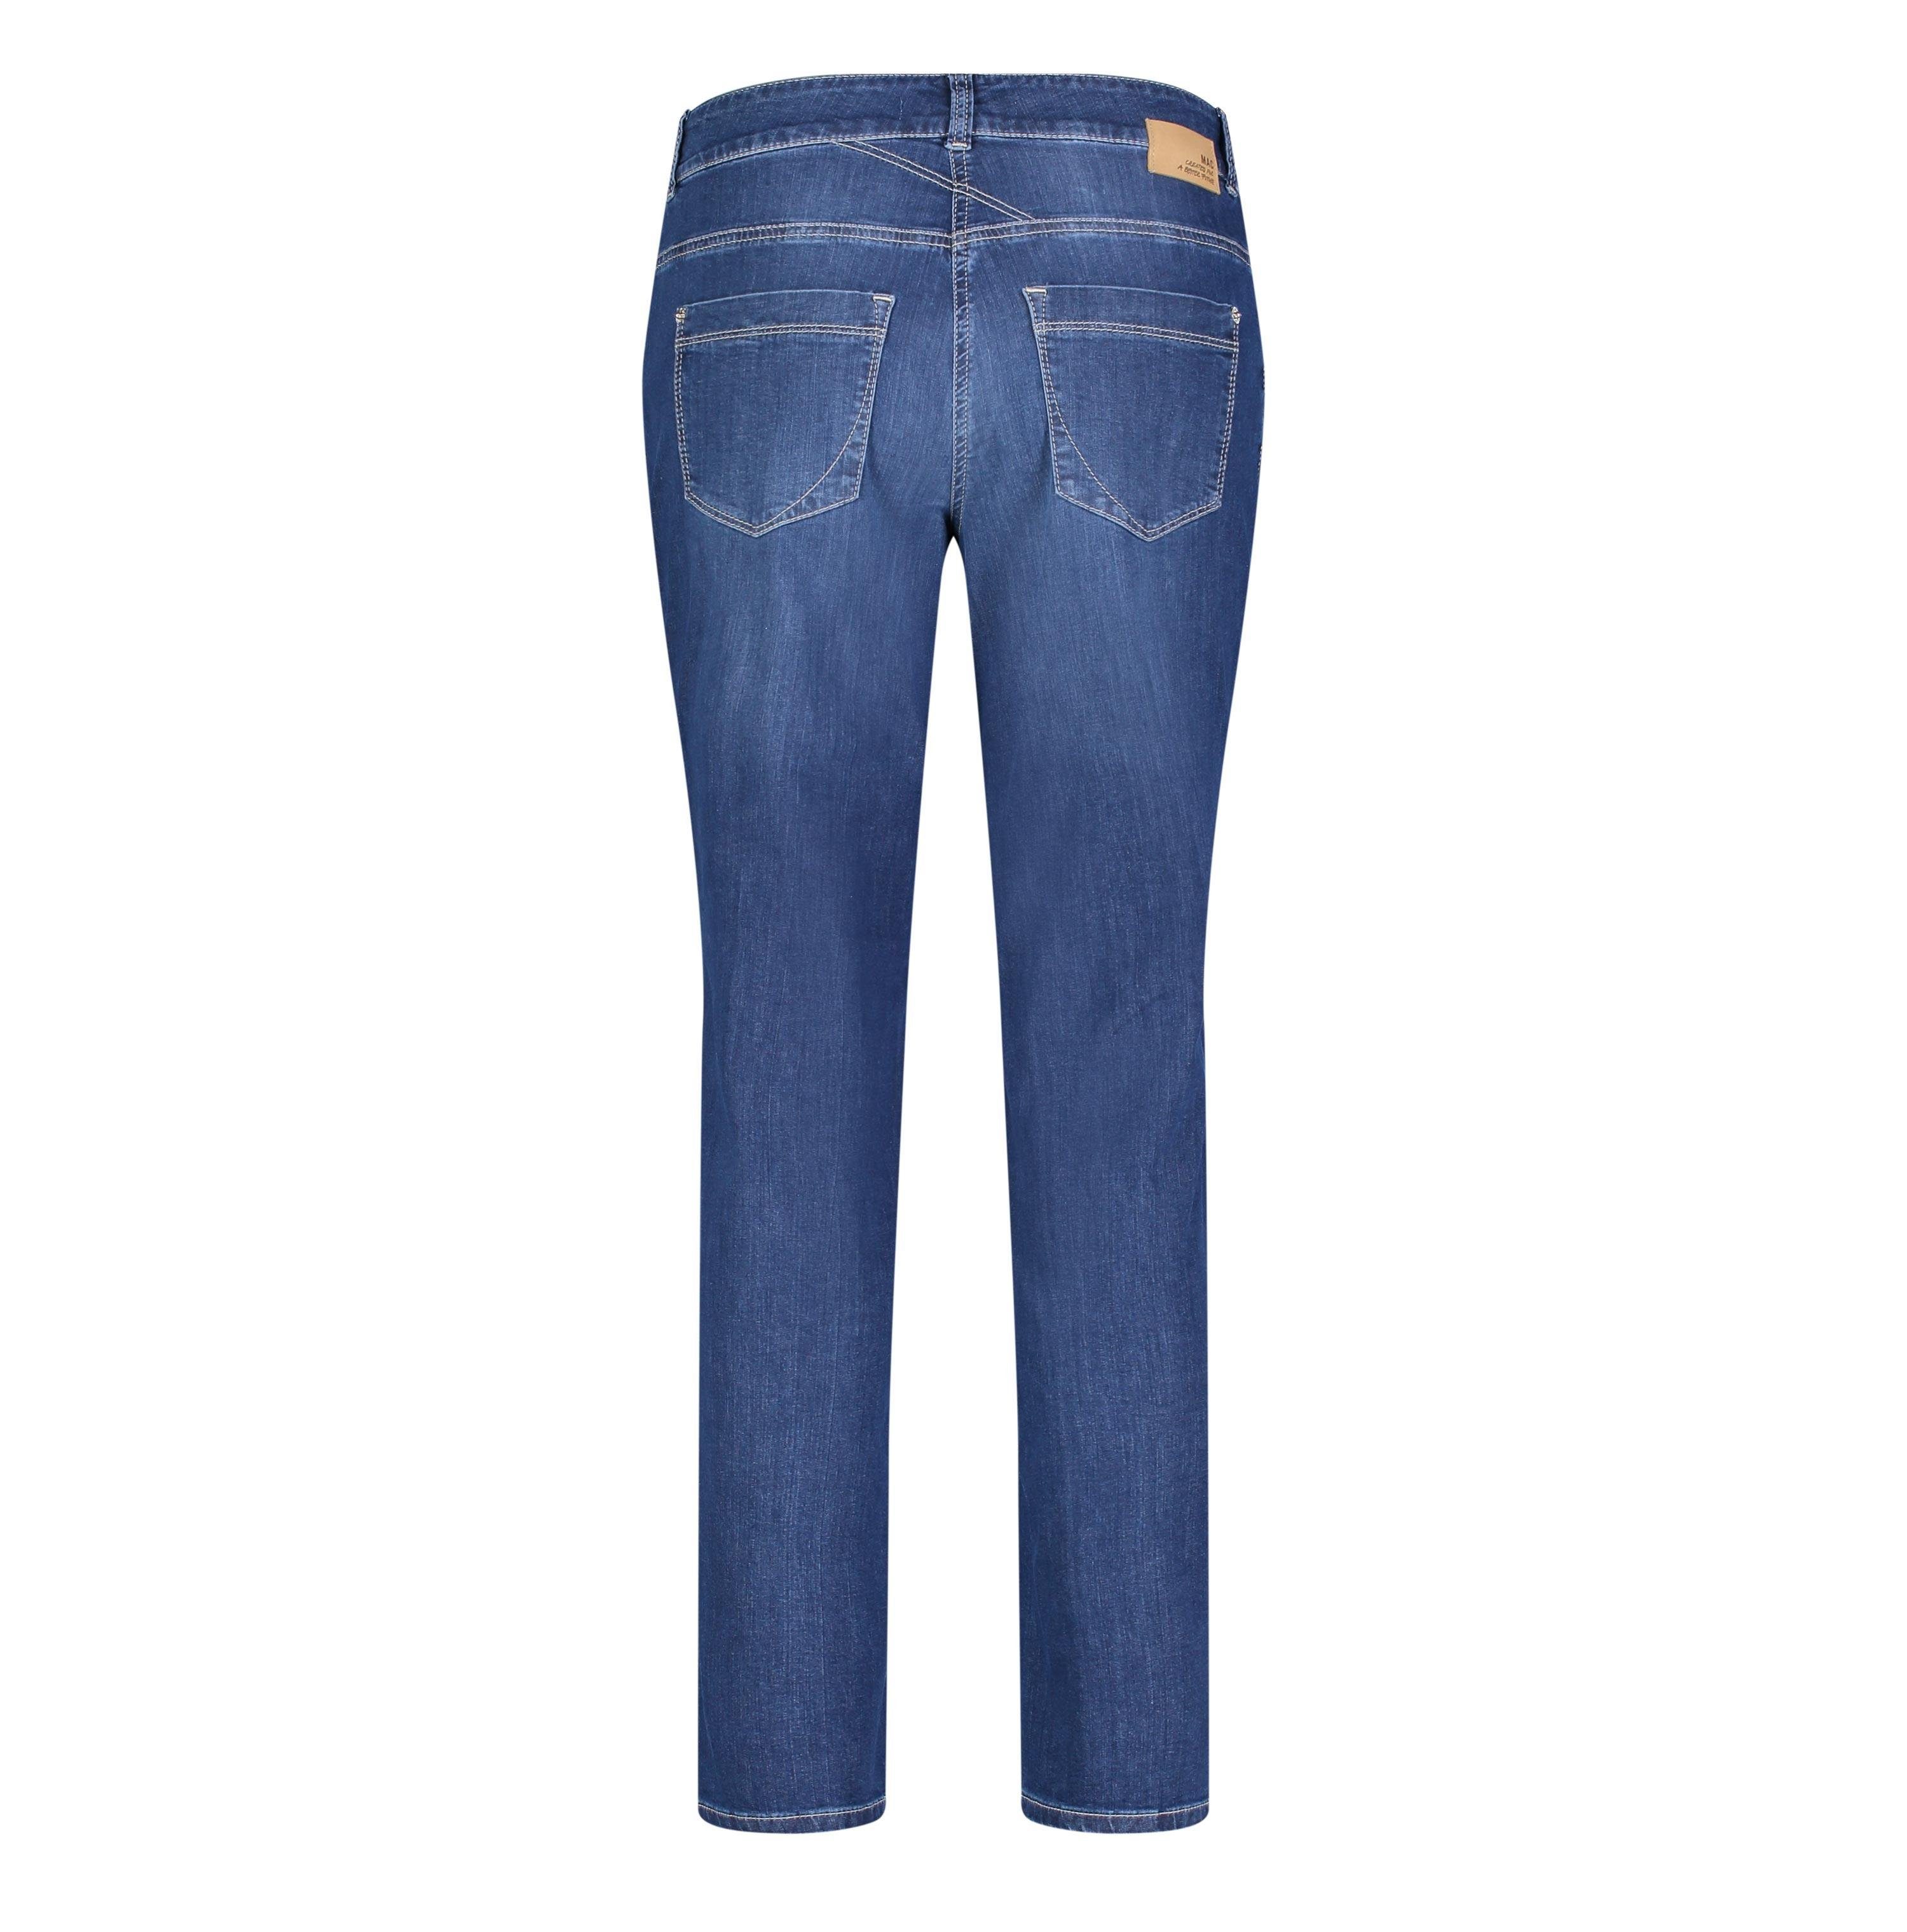 GRACIA D883 wash MAC Stretch-Jeans basic 5381-90-0391 MAC blue dark